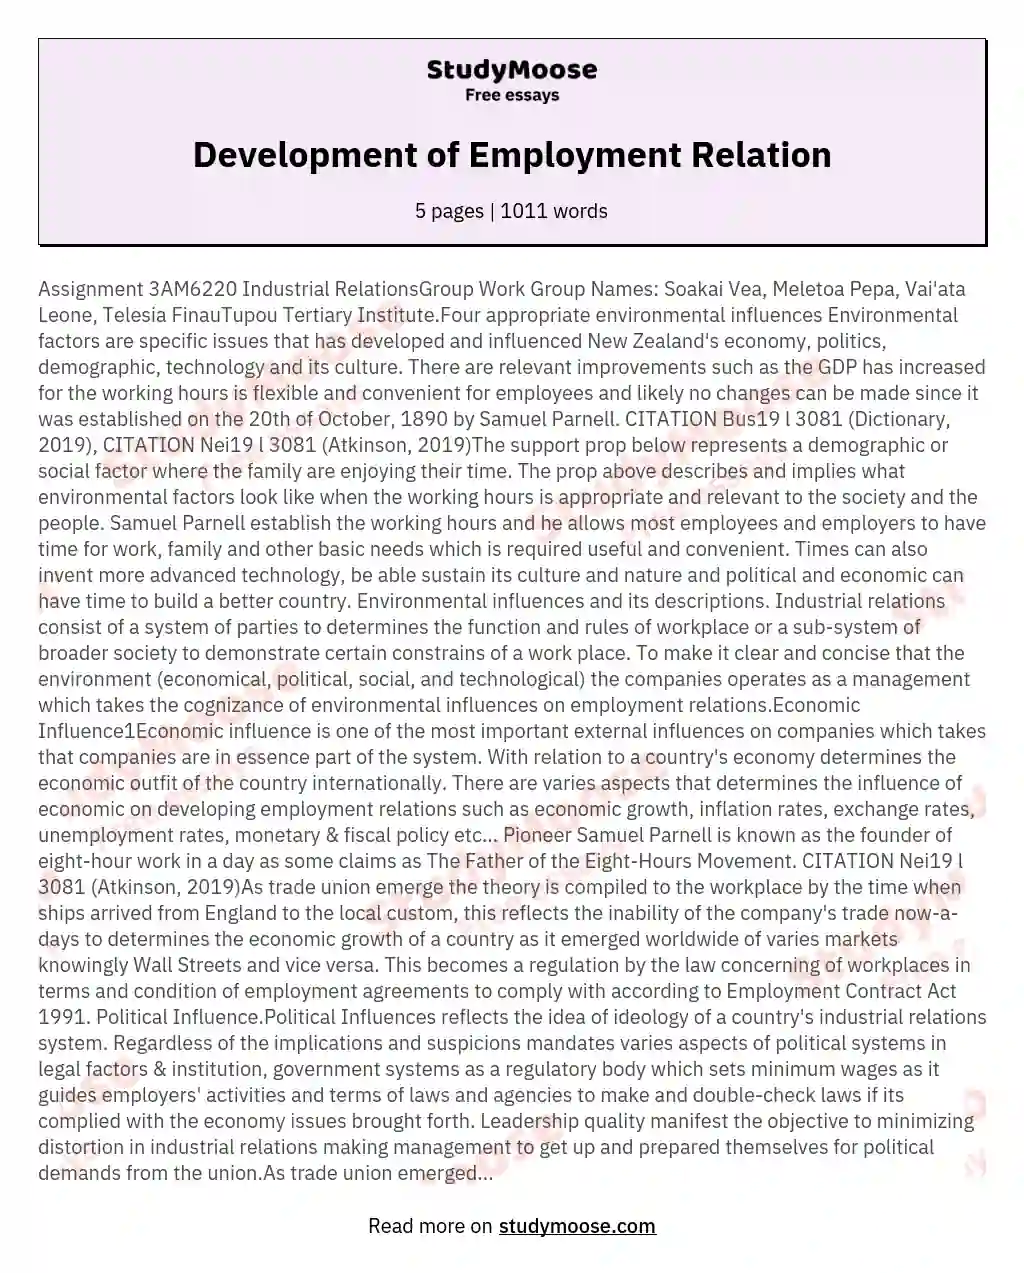 Development of Employment Relation essay